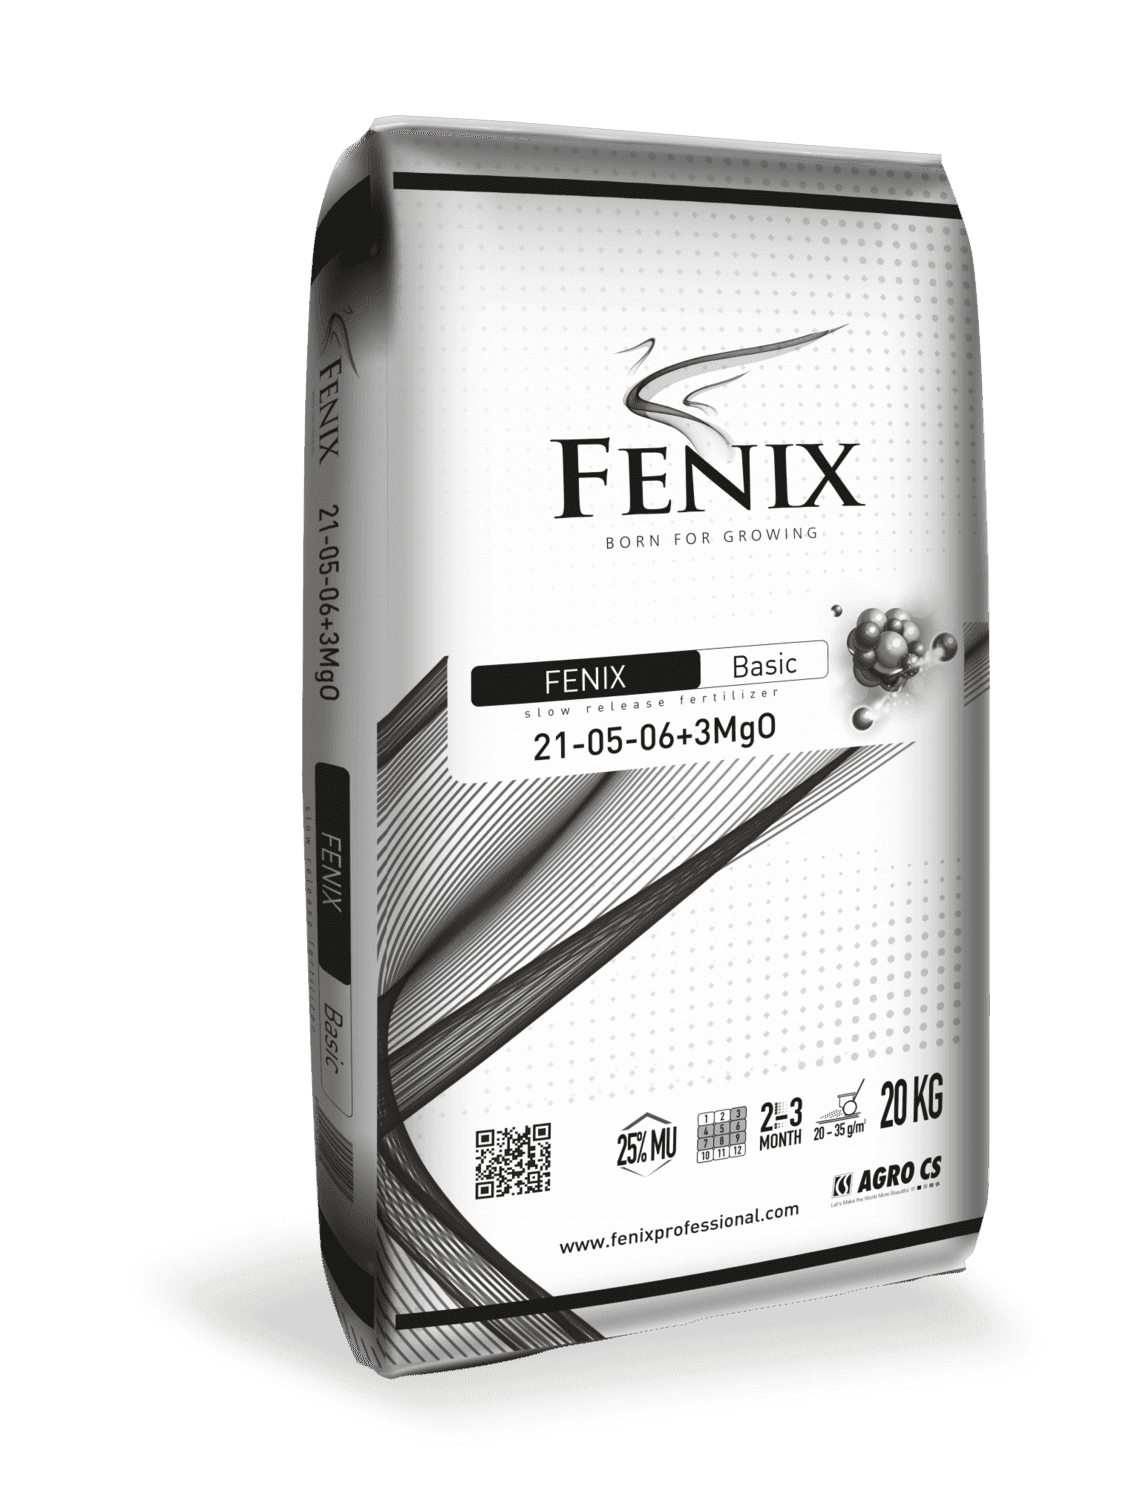 AGRO CS FENIX Basic 21-05-06+3MgO (25 % MU)